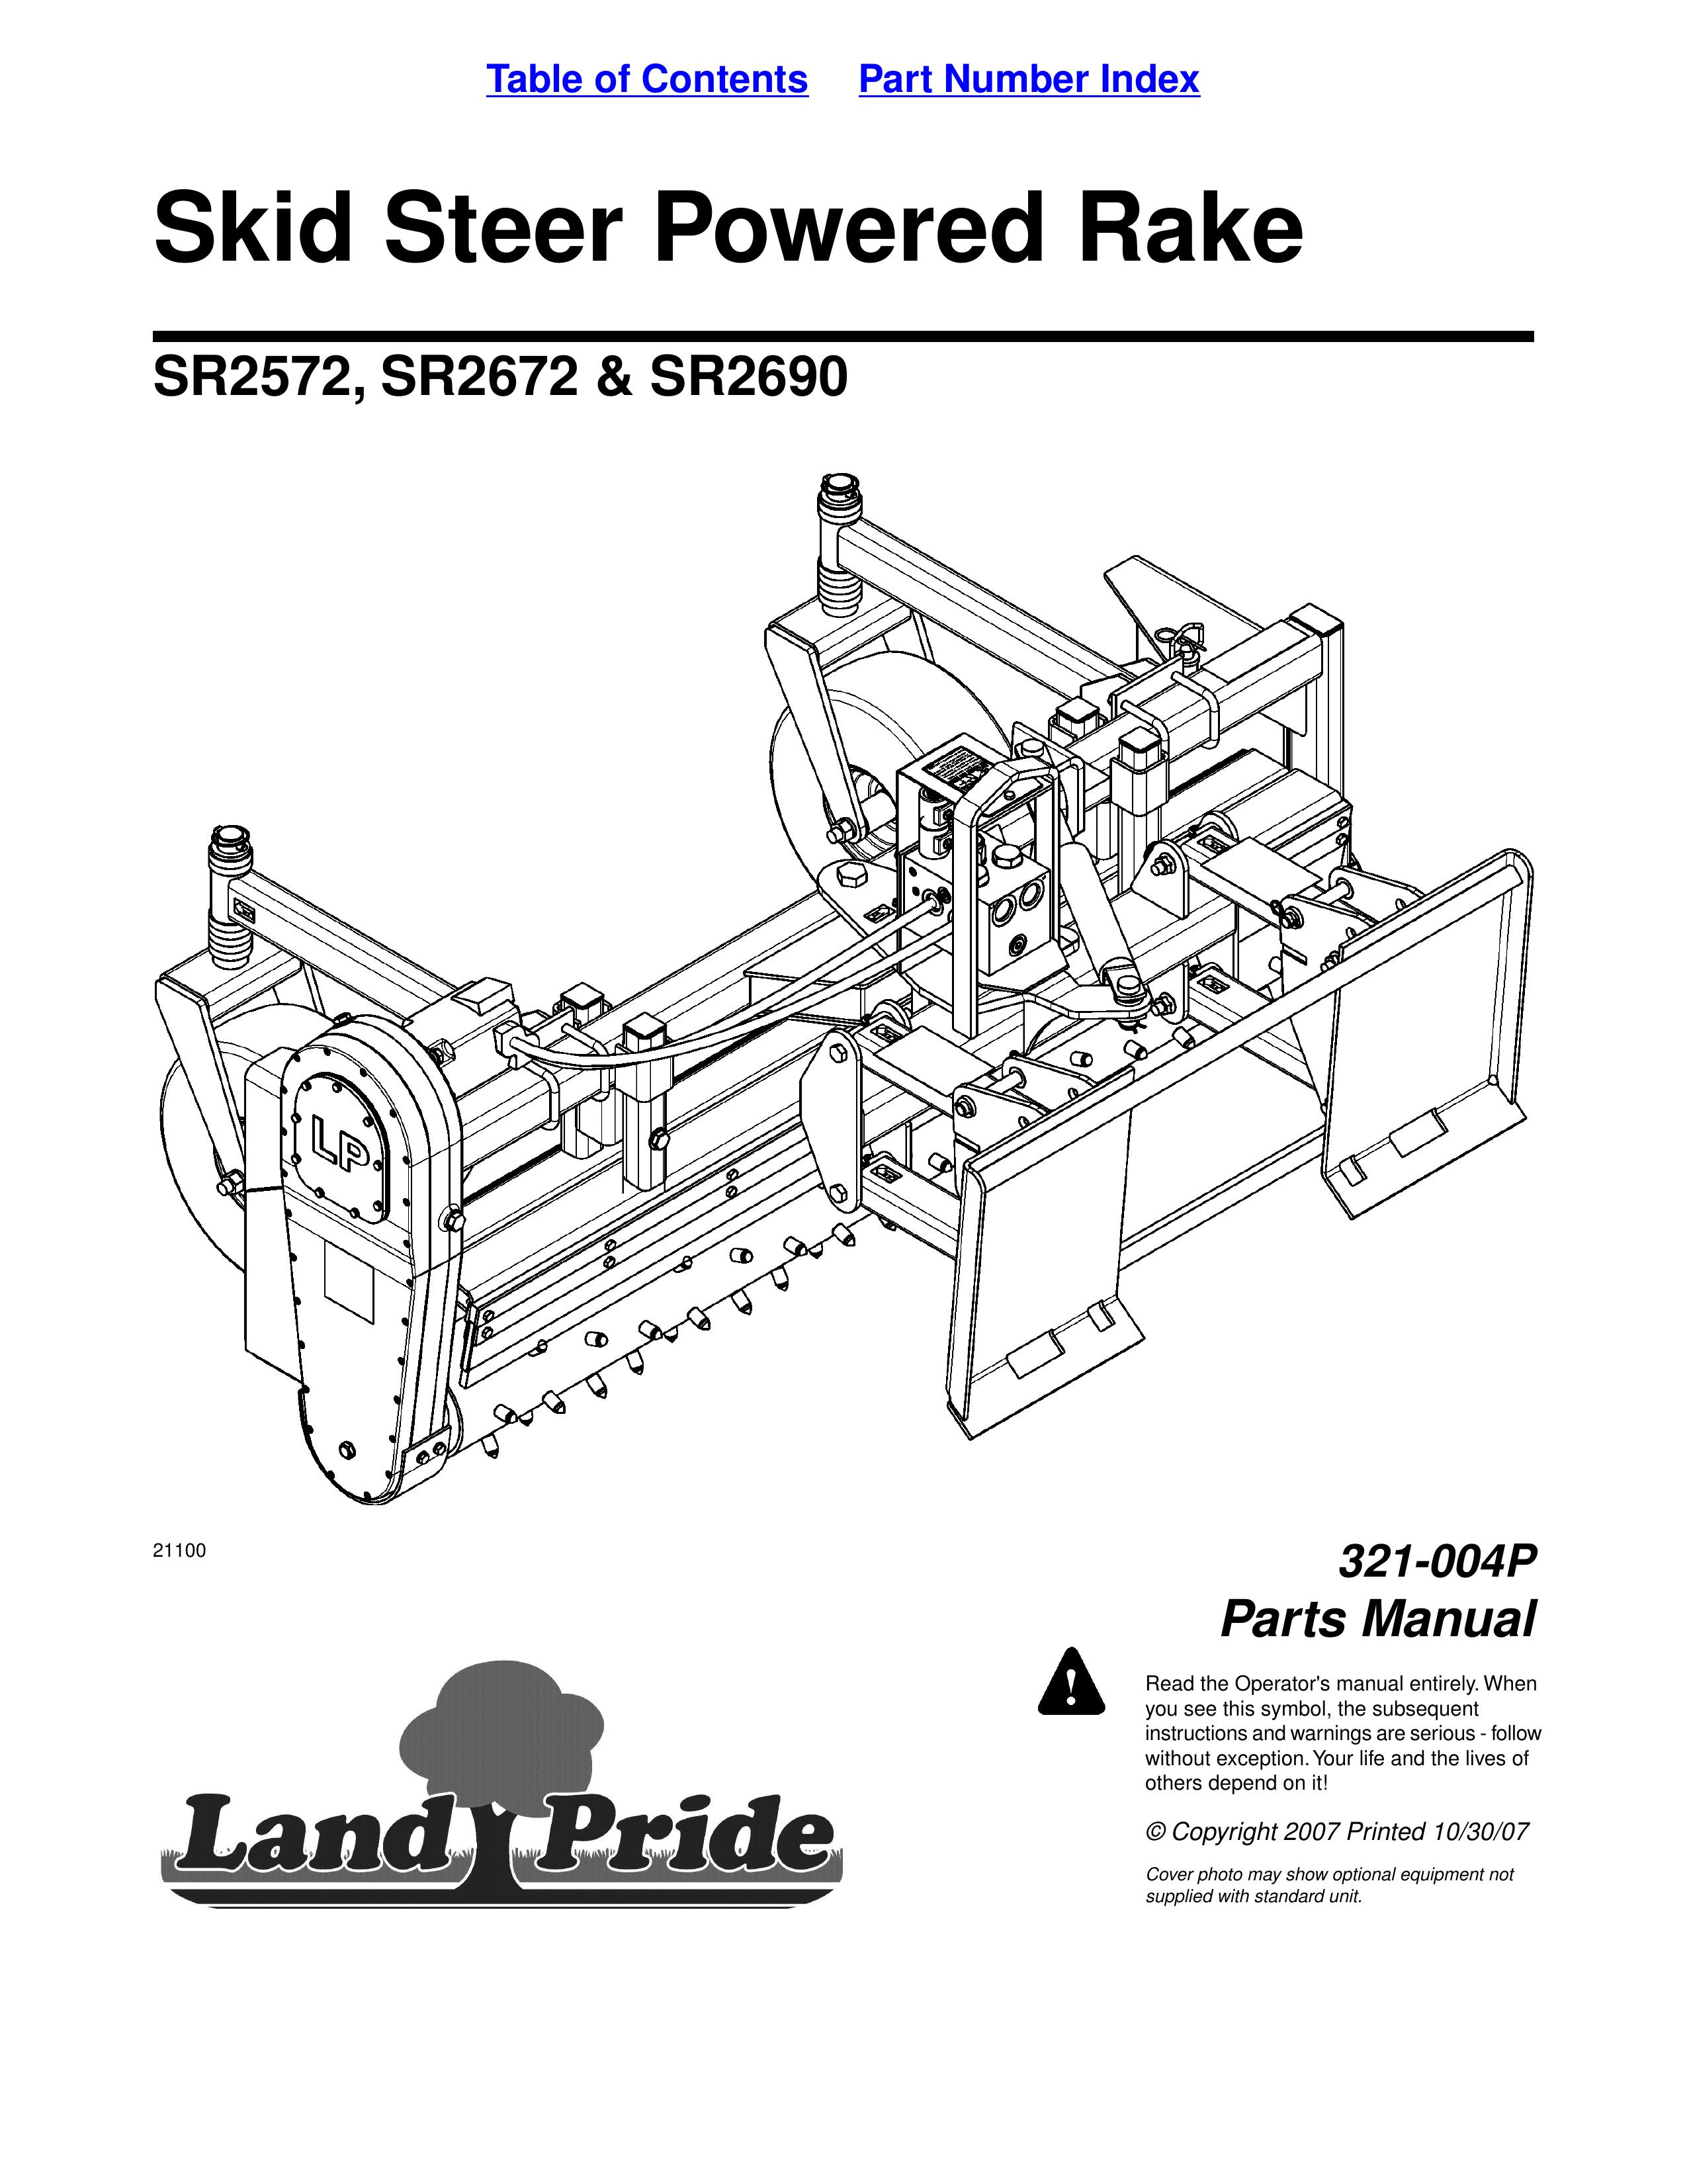 Land Pride SR2690 Compact Loader User Manual